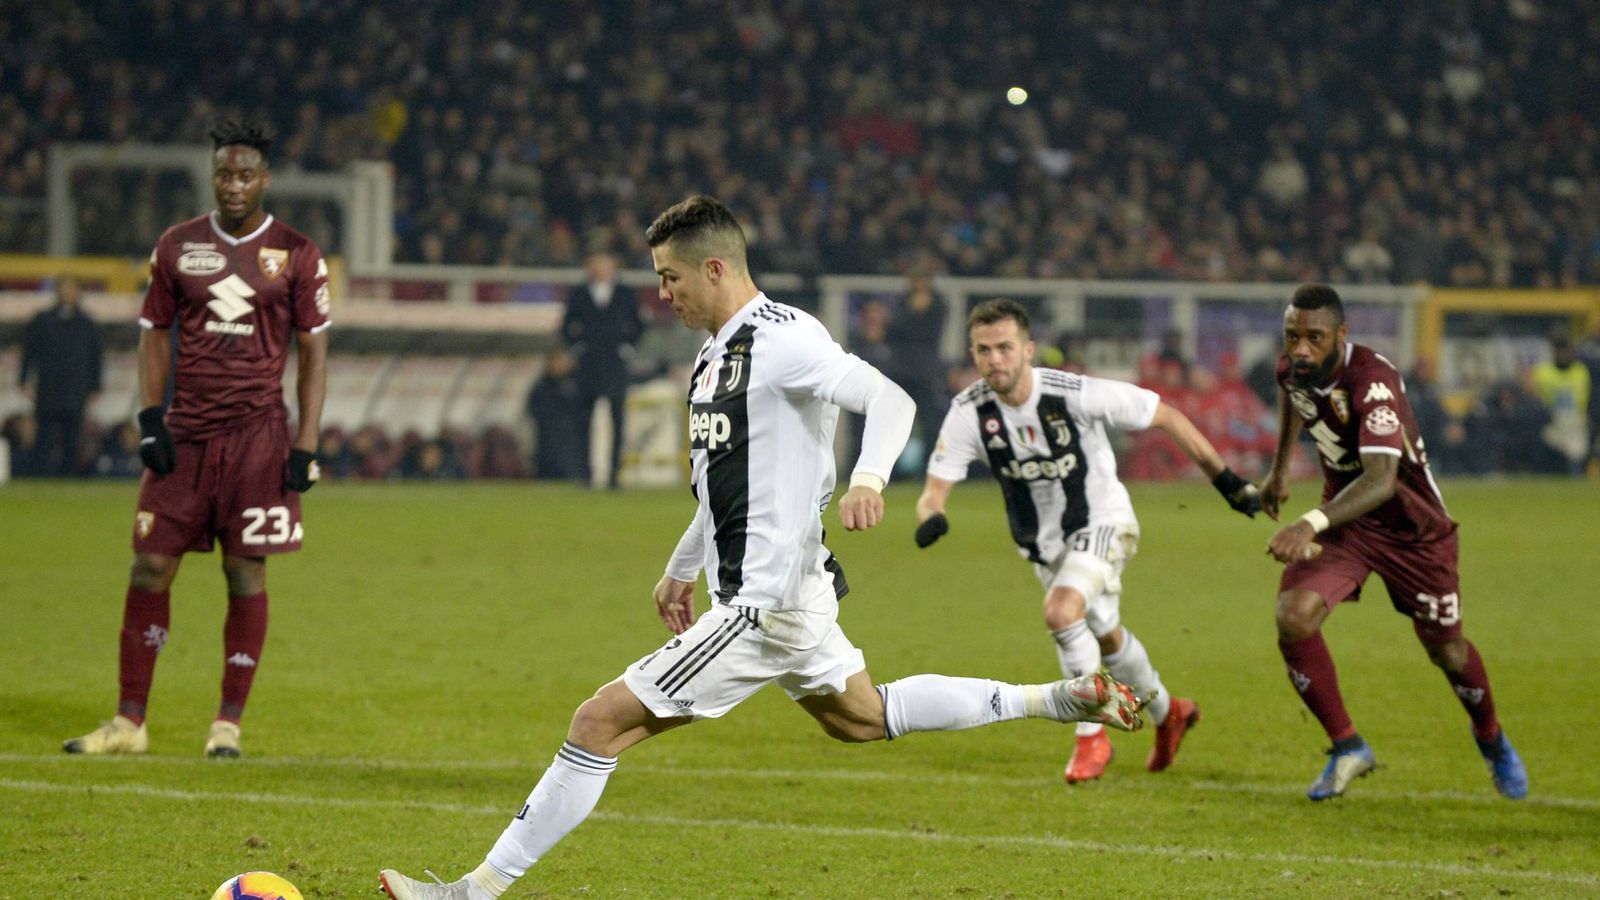 Ronaldo erzielt das 5000. Tor von Juventus in der Serie A | Fußball News | Sky Sport1600 x 900